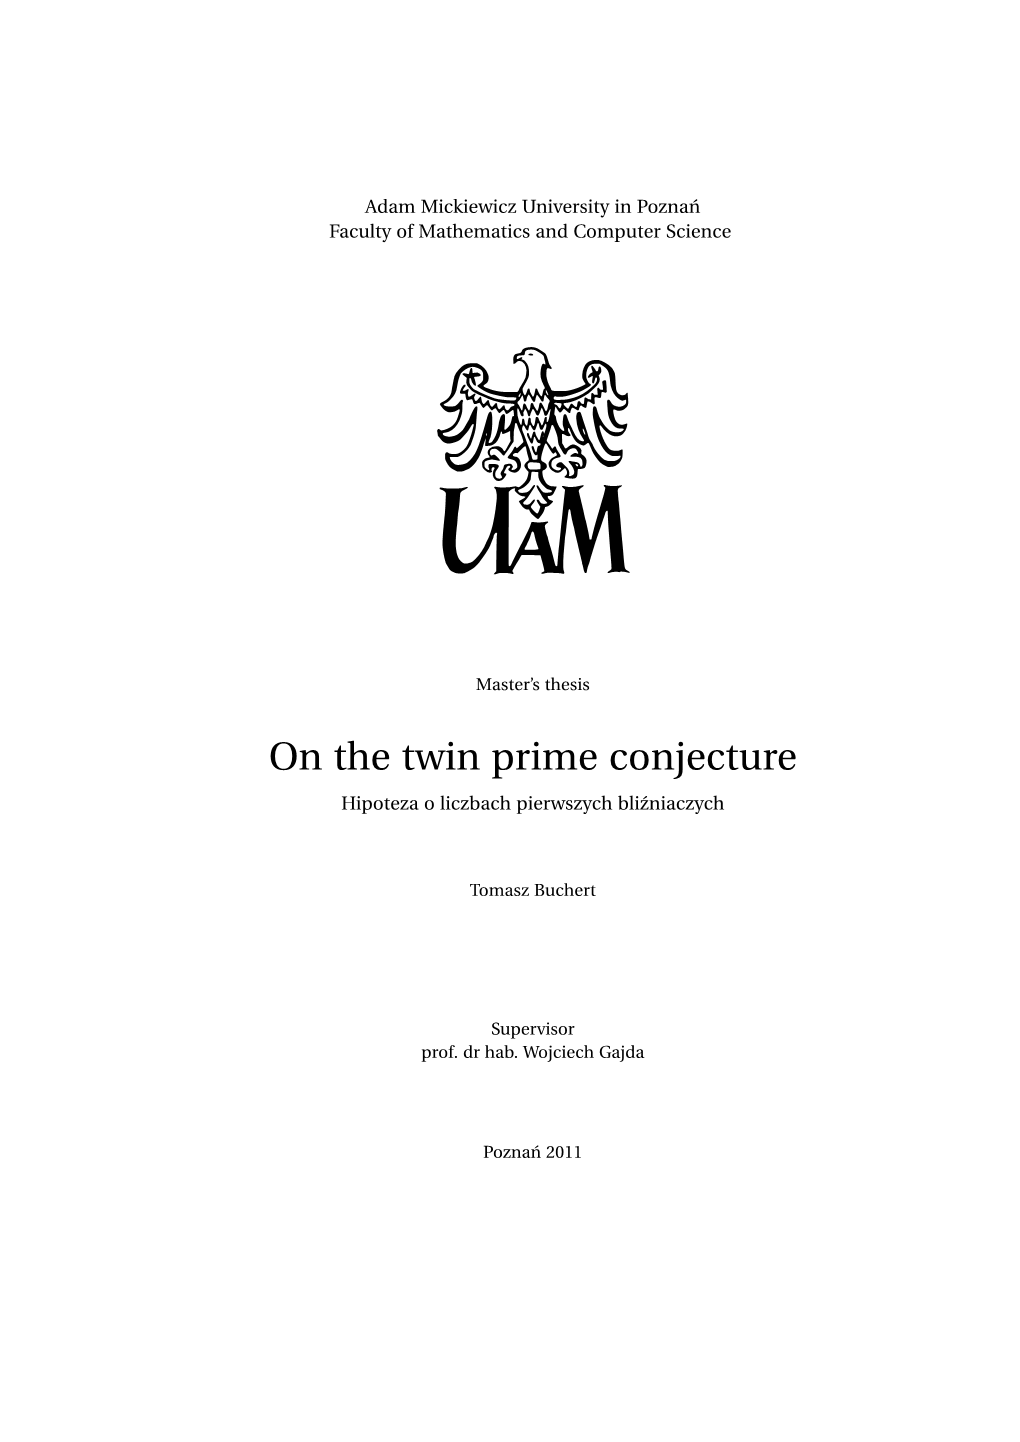 On the Twin Prime Conjecture Hipoteza O Liczbach Pierwszych Bli´Zniaczych